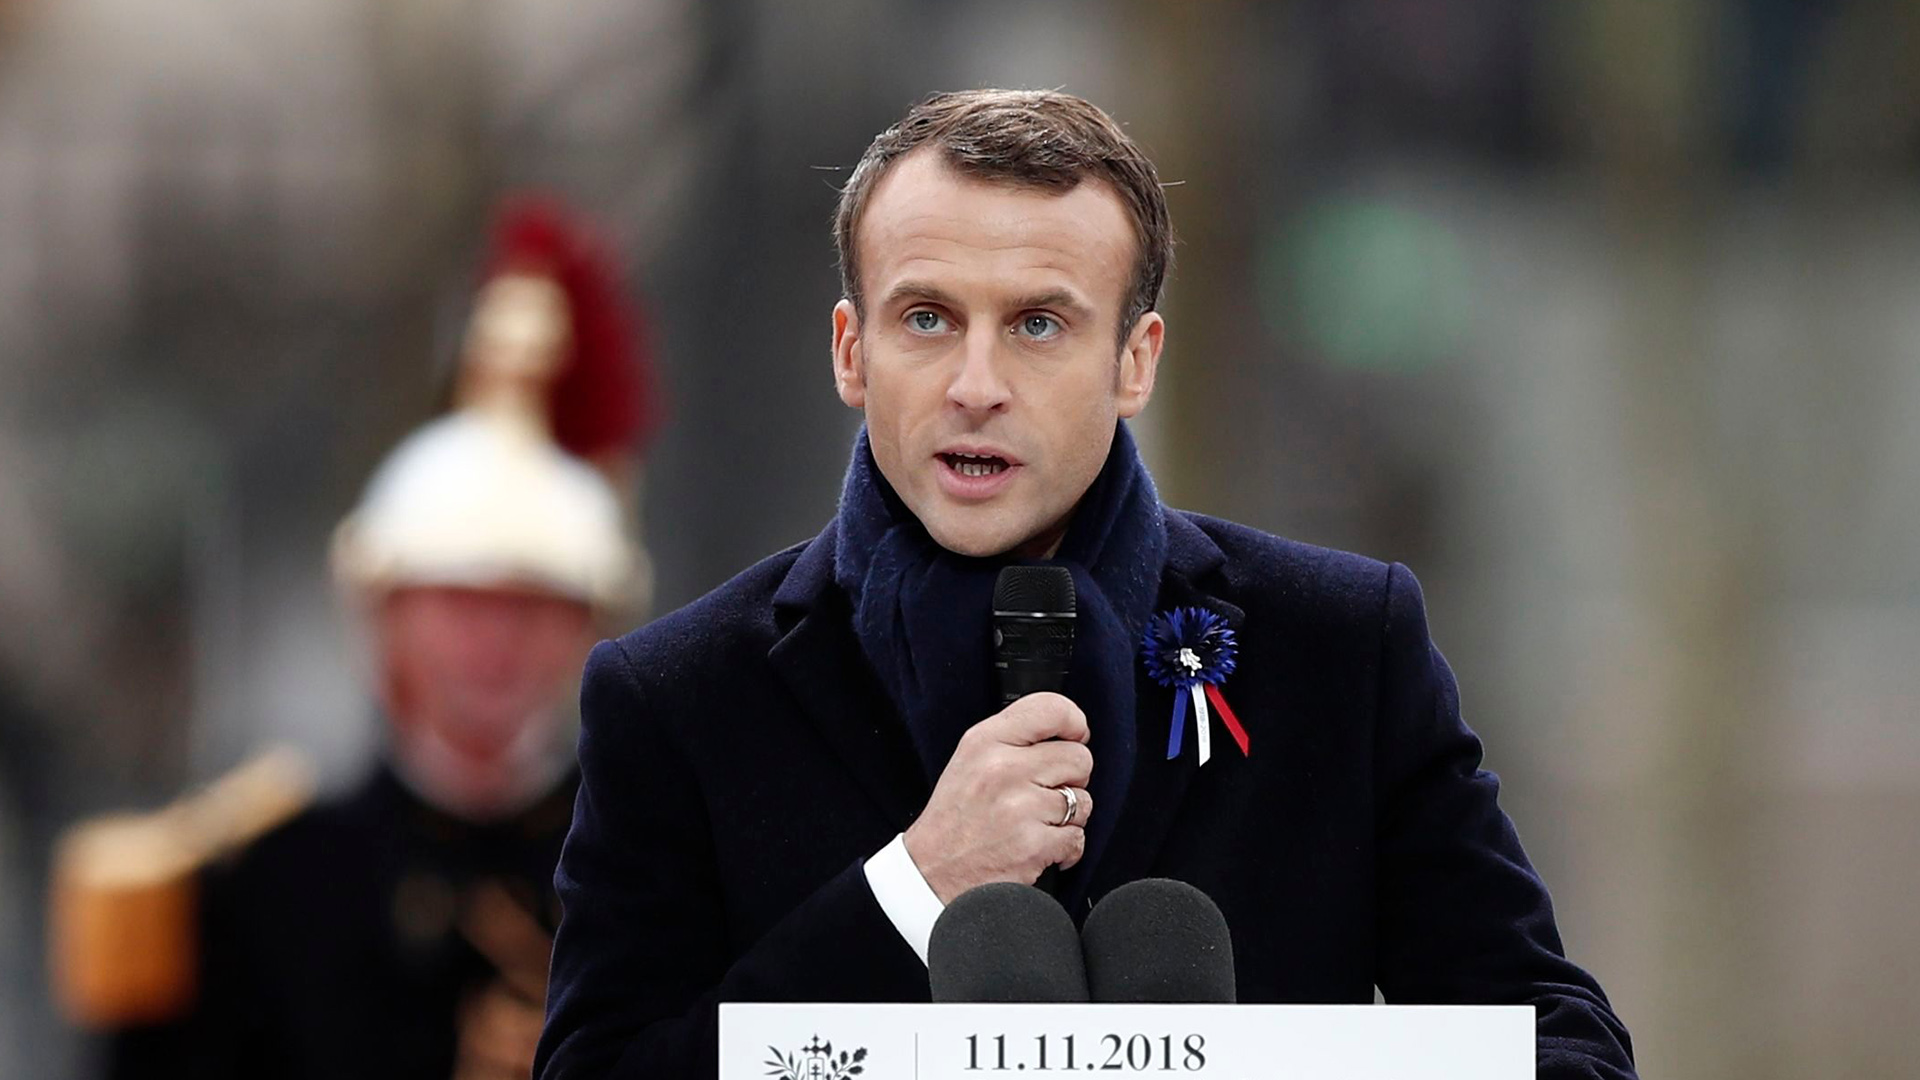 Der französische Präsident Emmanuel Macron | Bildquelle: BENOIT TESSIER/POOL/EPA-EFE/REX/